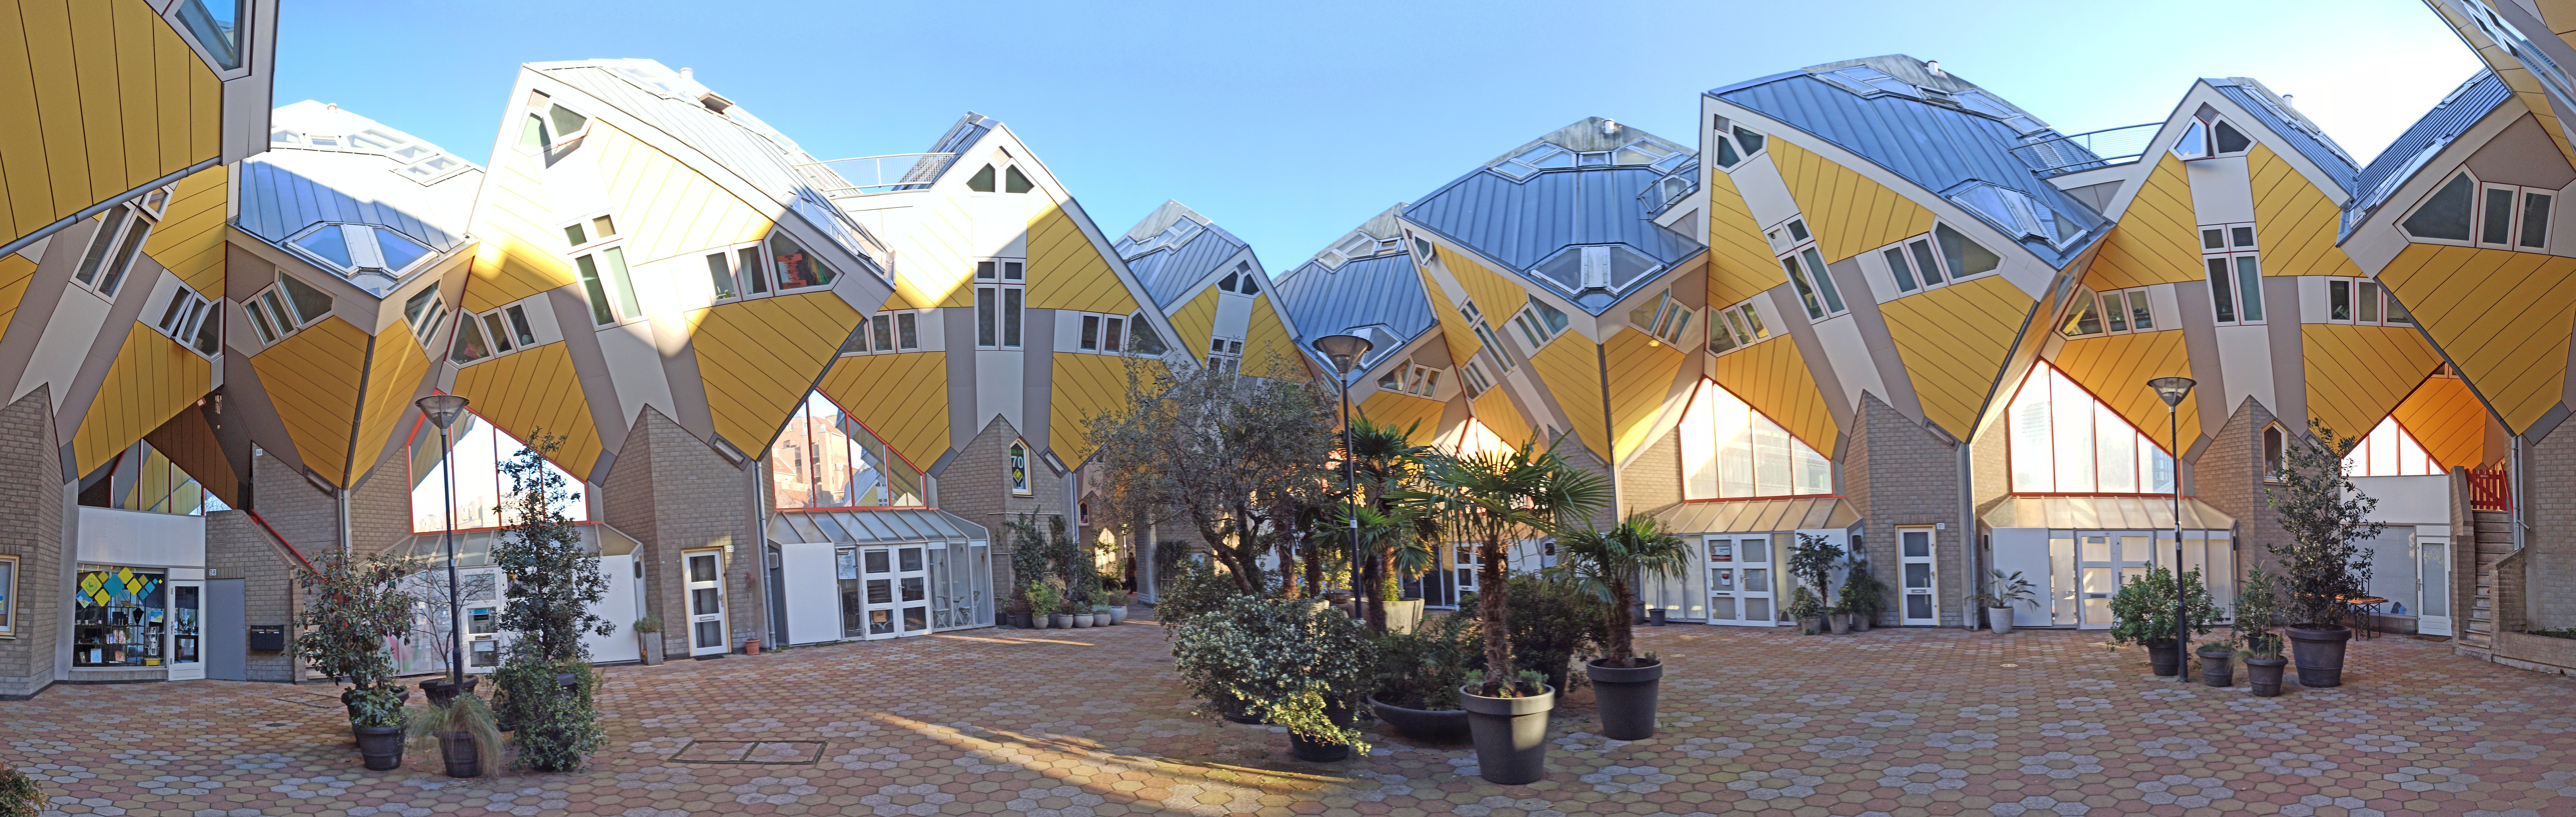 Cube Houses (Cubuswoningen), Rotterdam, the Netherlands, February 2022